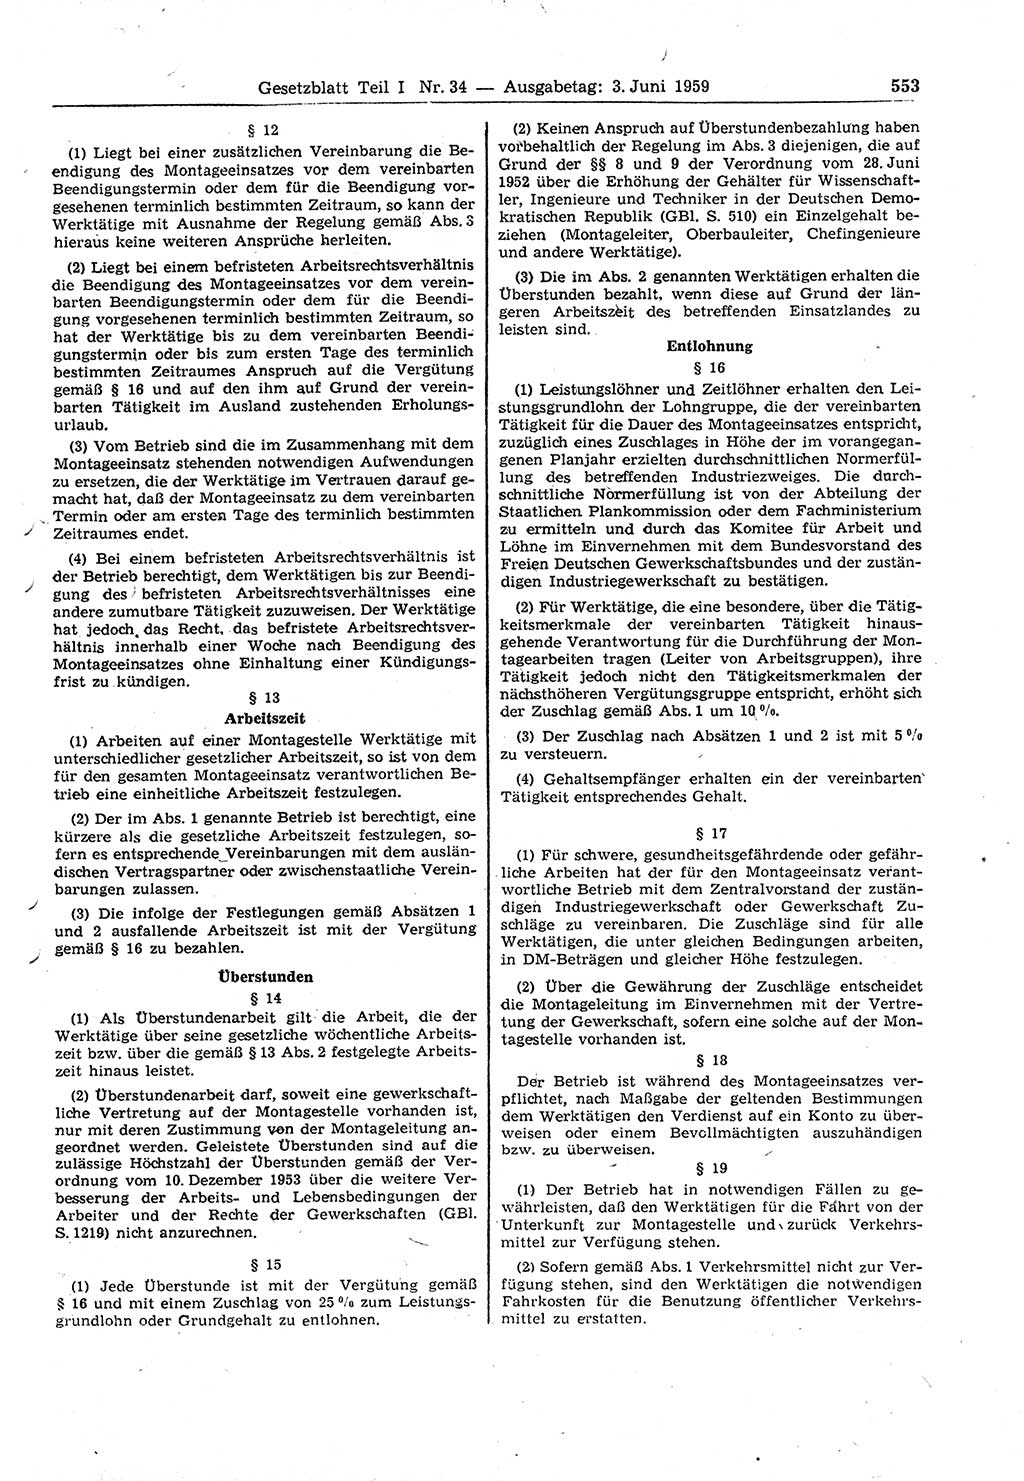 Gesetzblatt (GBl.) der Deutschen Demokratischen Republik (DDR) Teil Ⅰ 1959, Seite 553 (GBl. DDR Ⅰ 1959, S. 553)